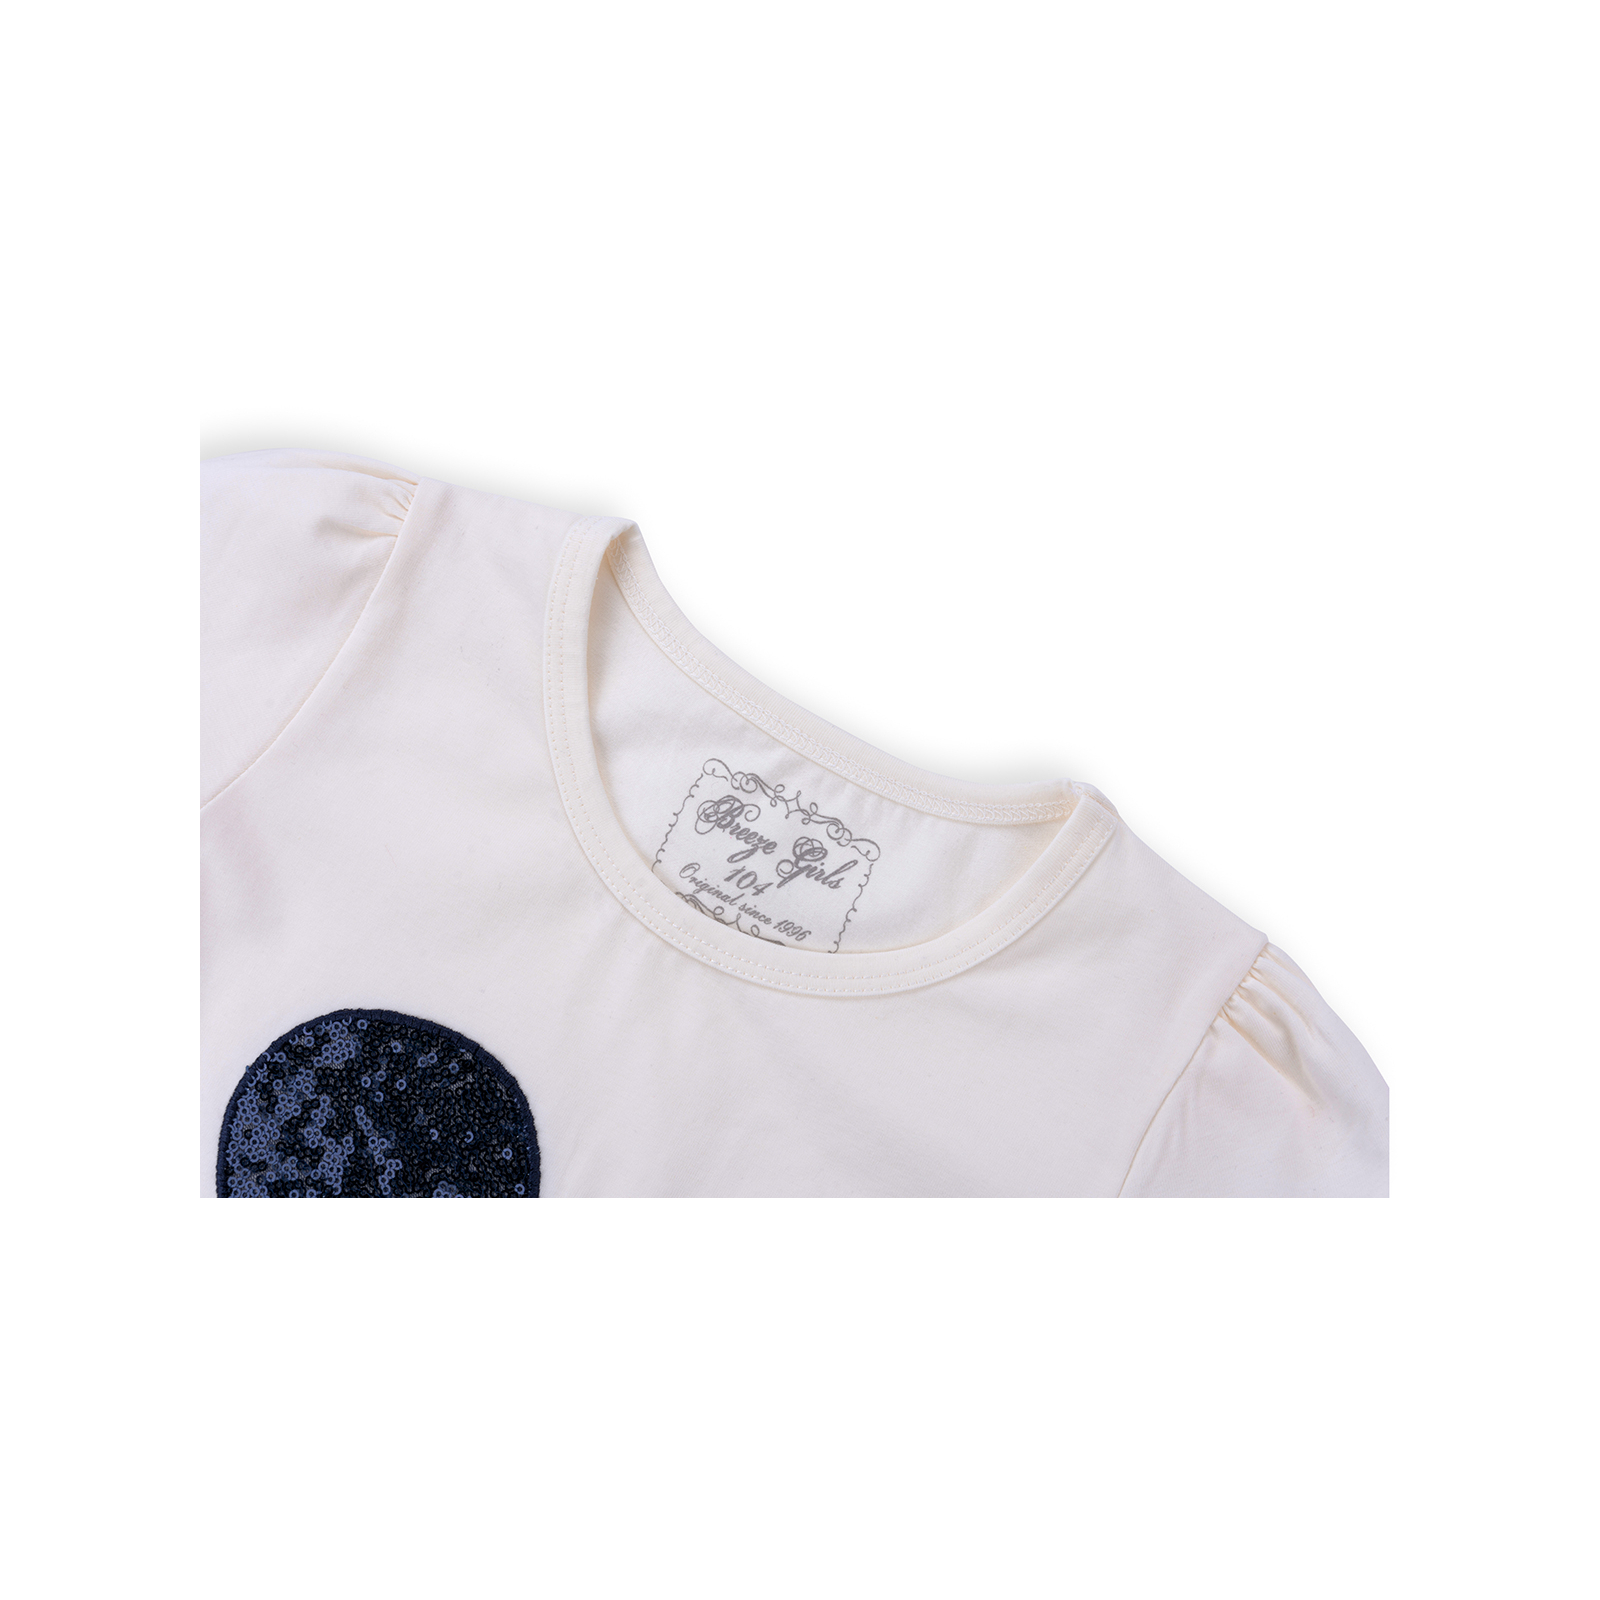 Набор детской одежды Breeze футболка с бабочкой со штанишками (8969-92G-cream) изображение 4